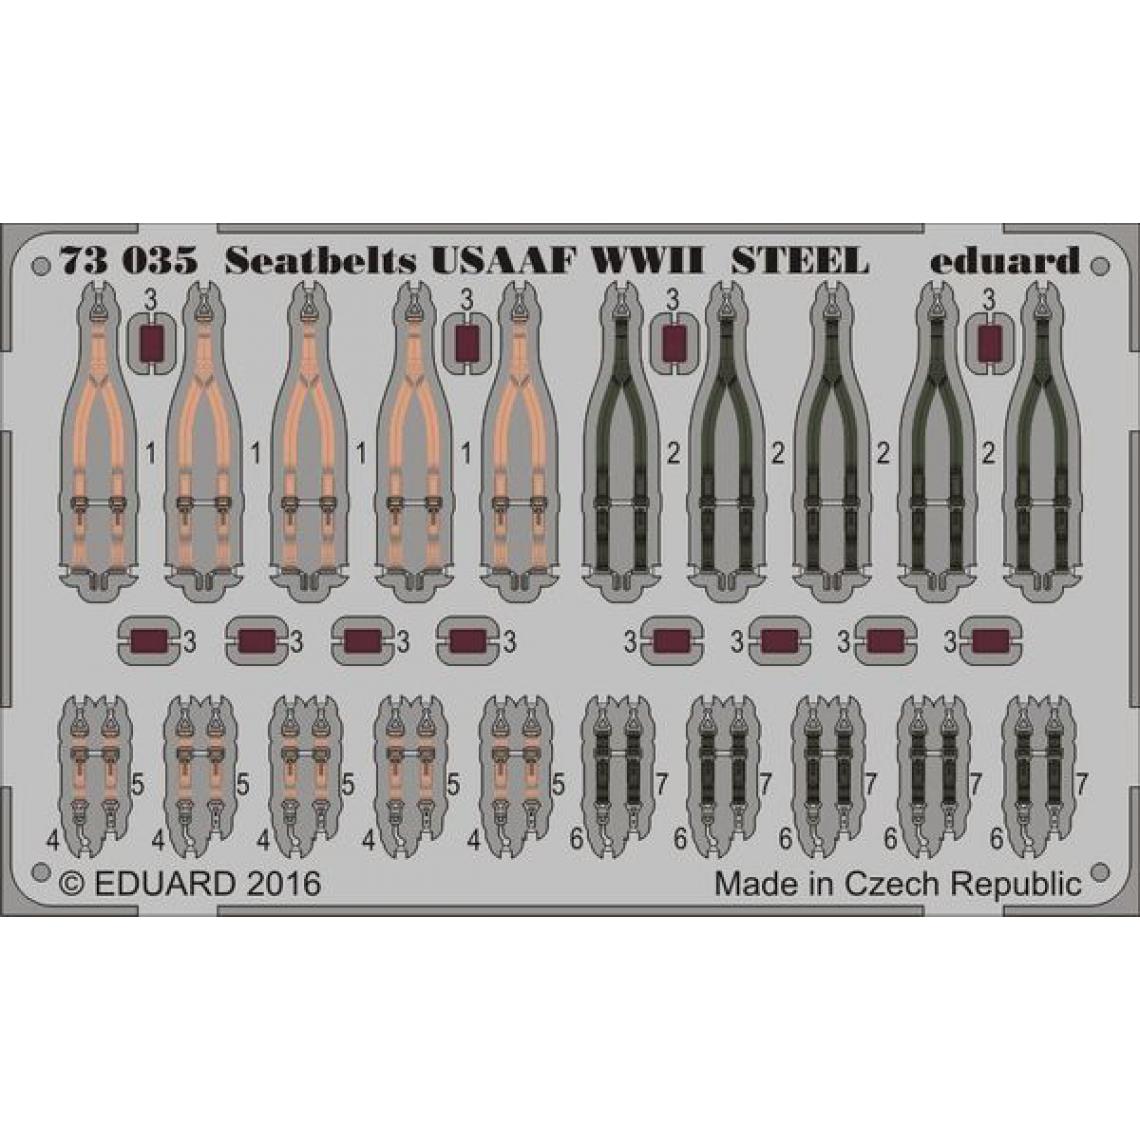 Eduard - Seatbelts USAAF WWII STEEL - 1:72e - Eduard Accessories - Accessoires et pièces